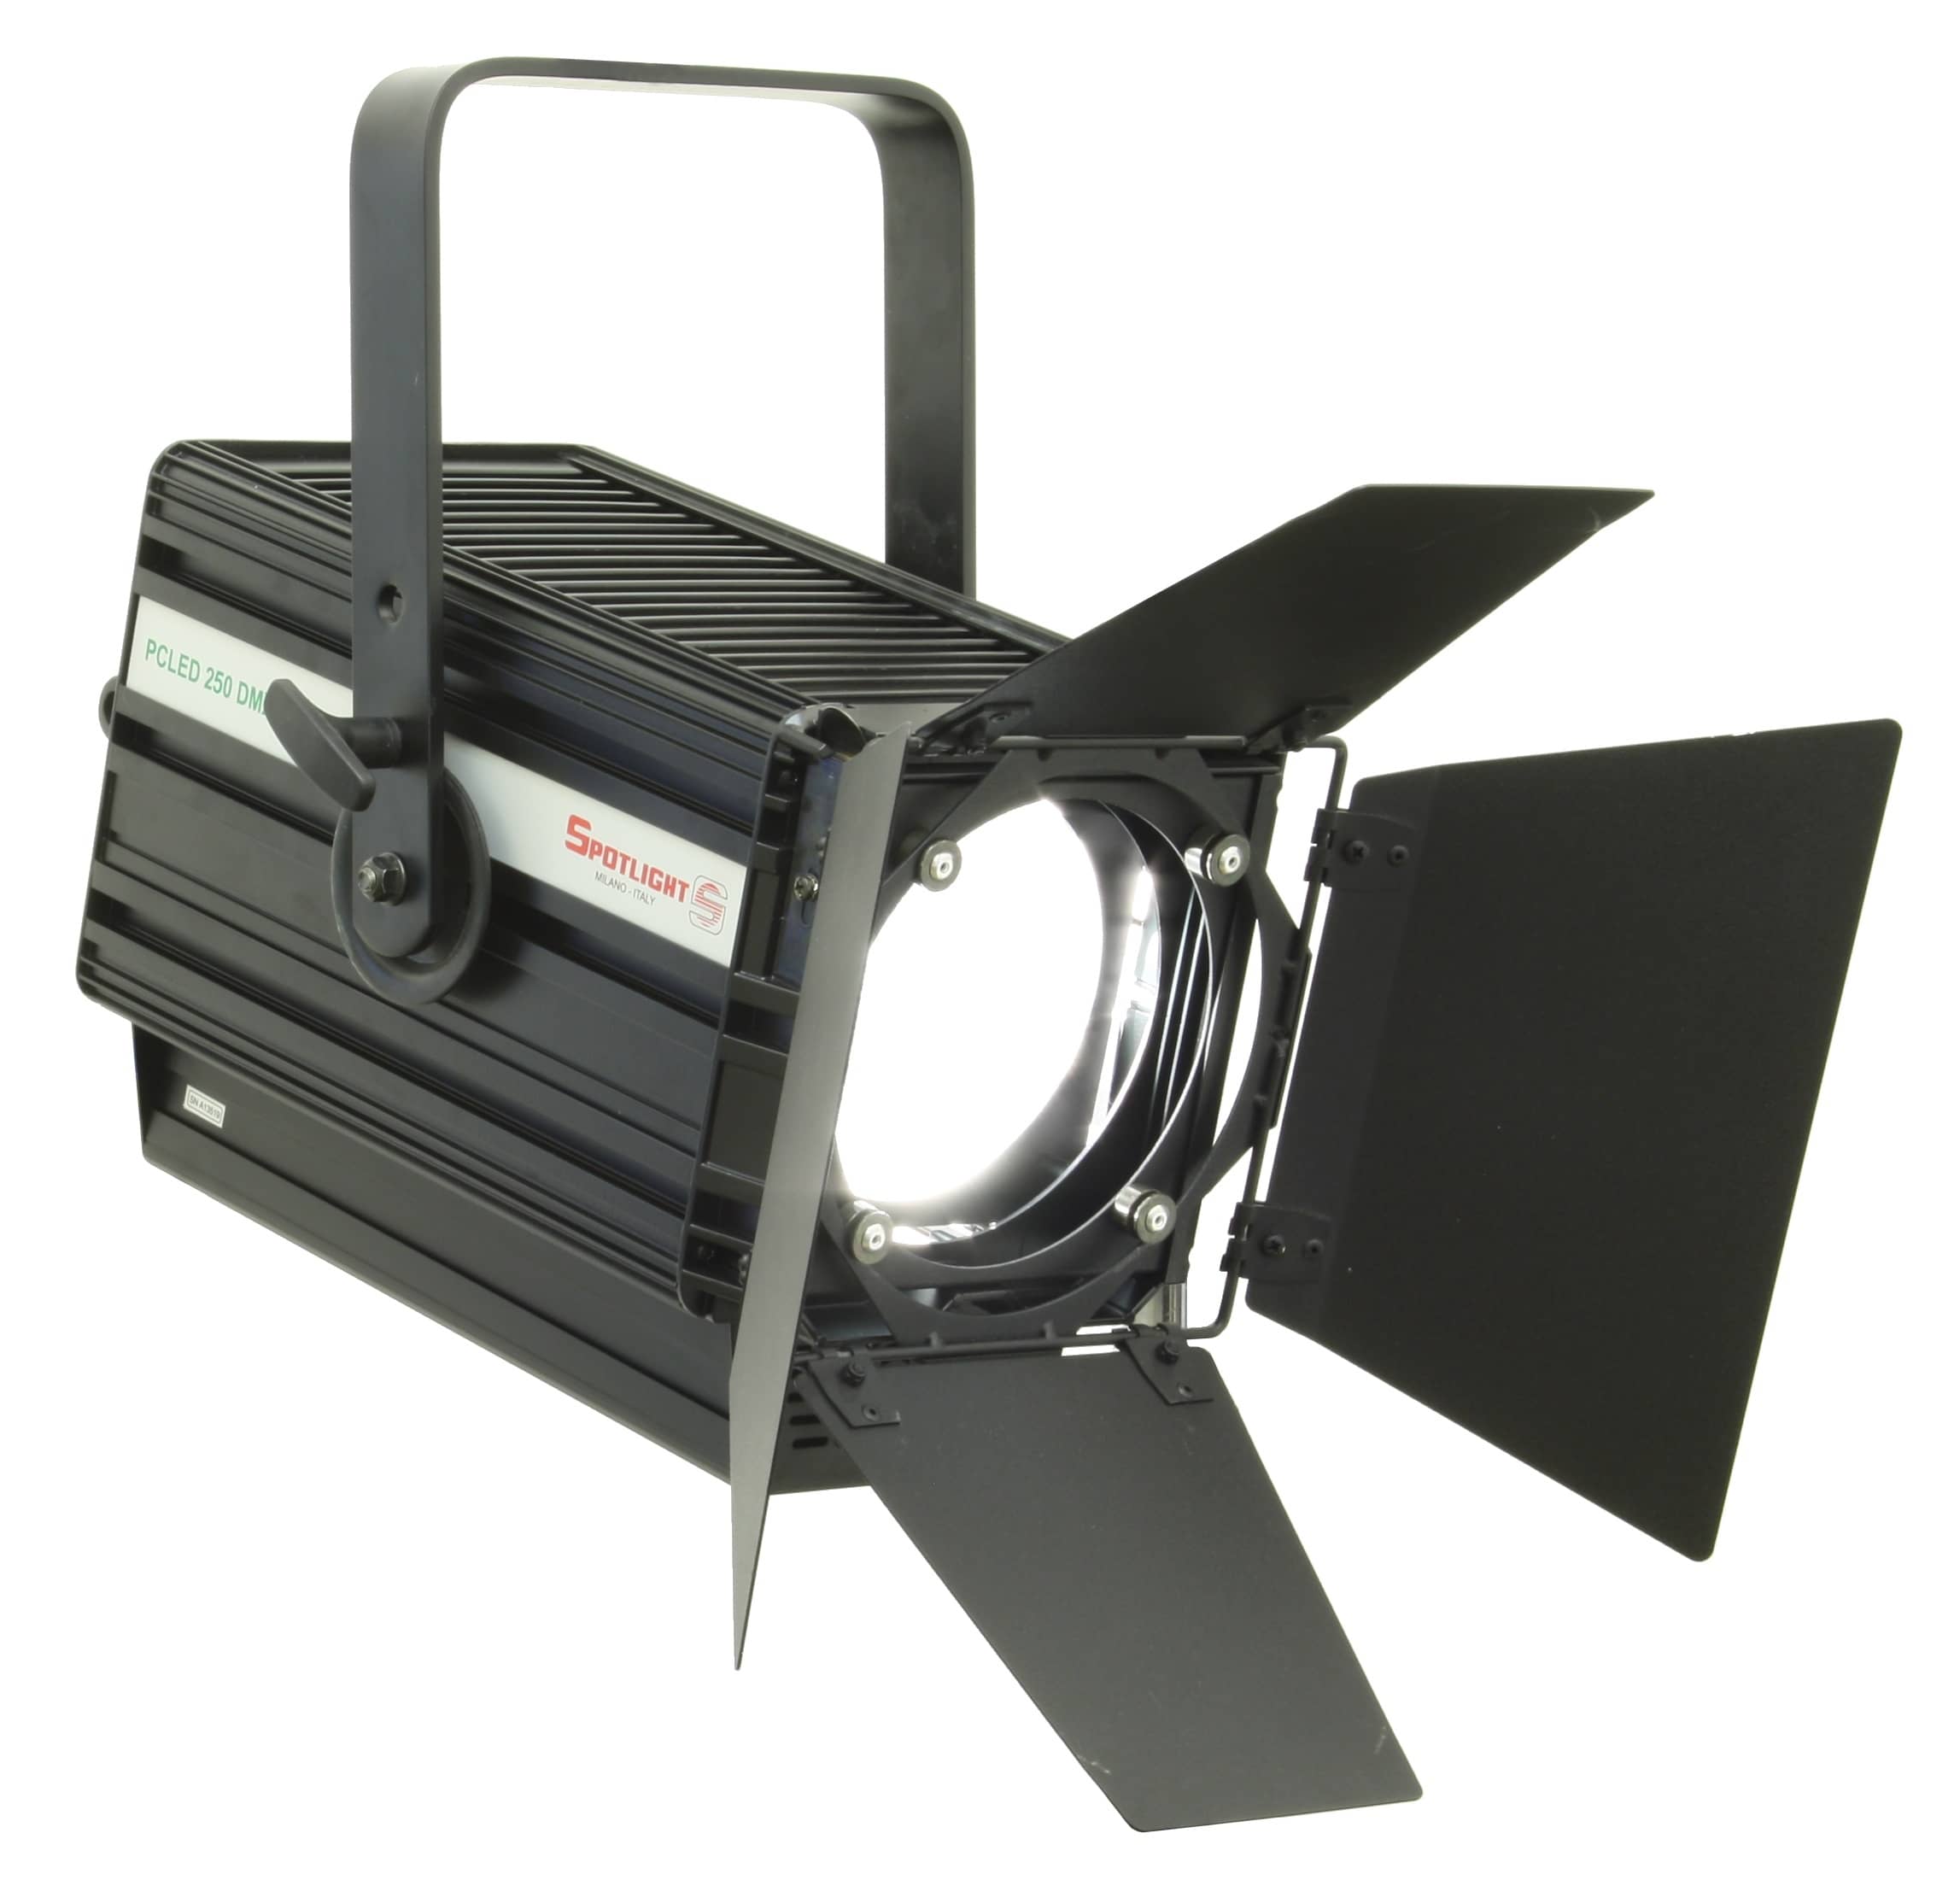 Proiettore piano-convesso LED PC LED 250 CW DMX